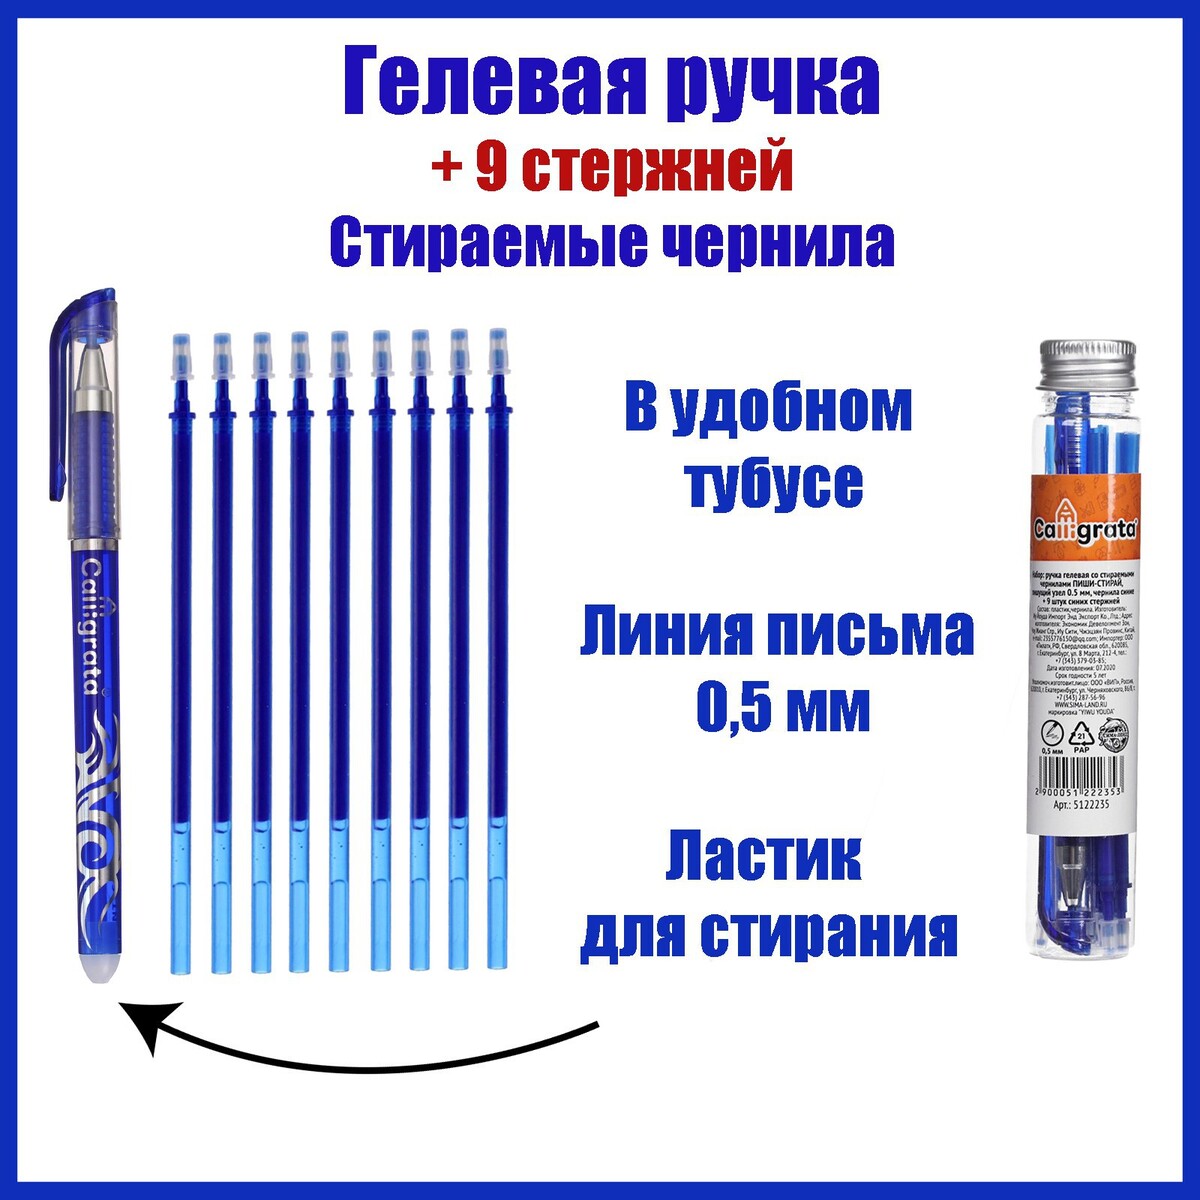 Набор ручка гелевая со стираемыми чернилами, пишущий узел 0.5 мм, чернила синие+9 синих стержней набор ручек шариковых 10 штук стамм оптима узел 1 0 мм чернила синие с европодвесом